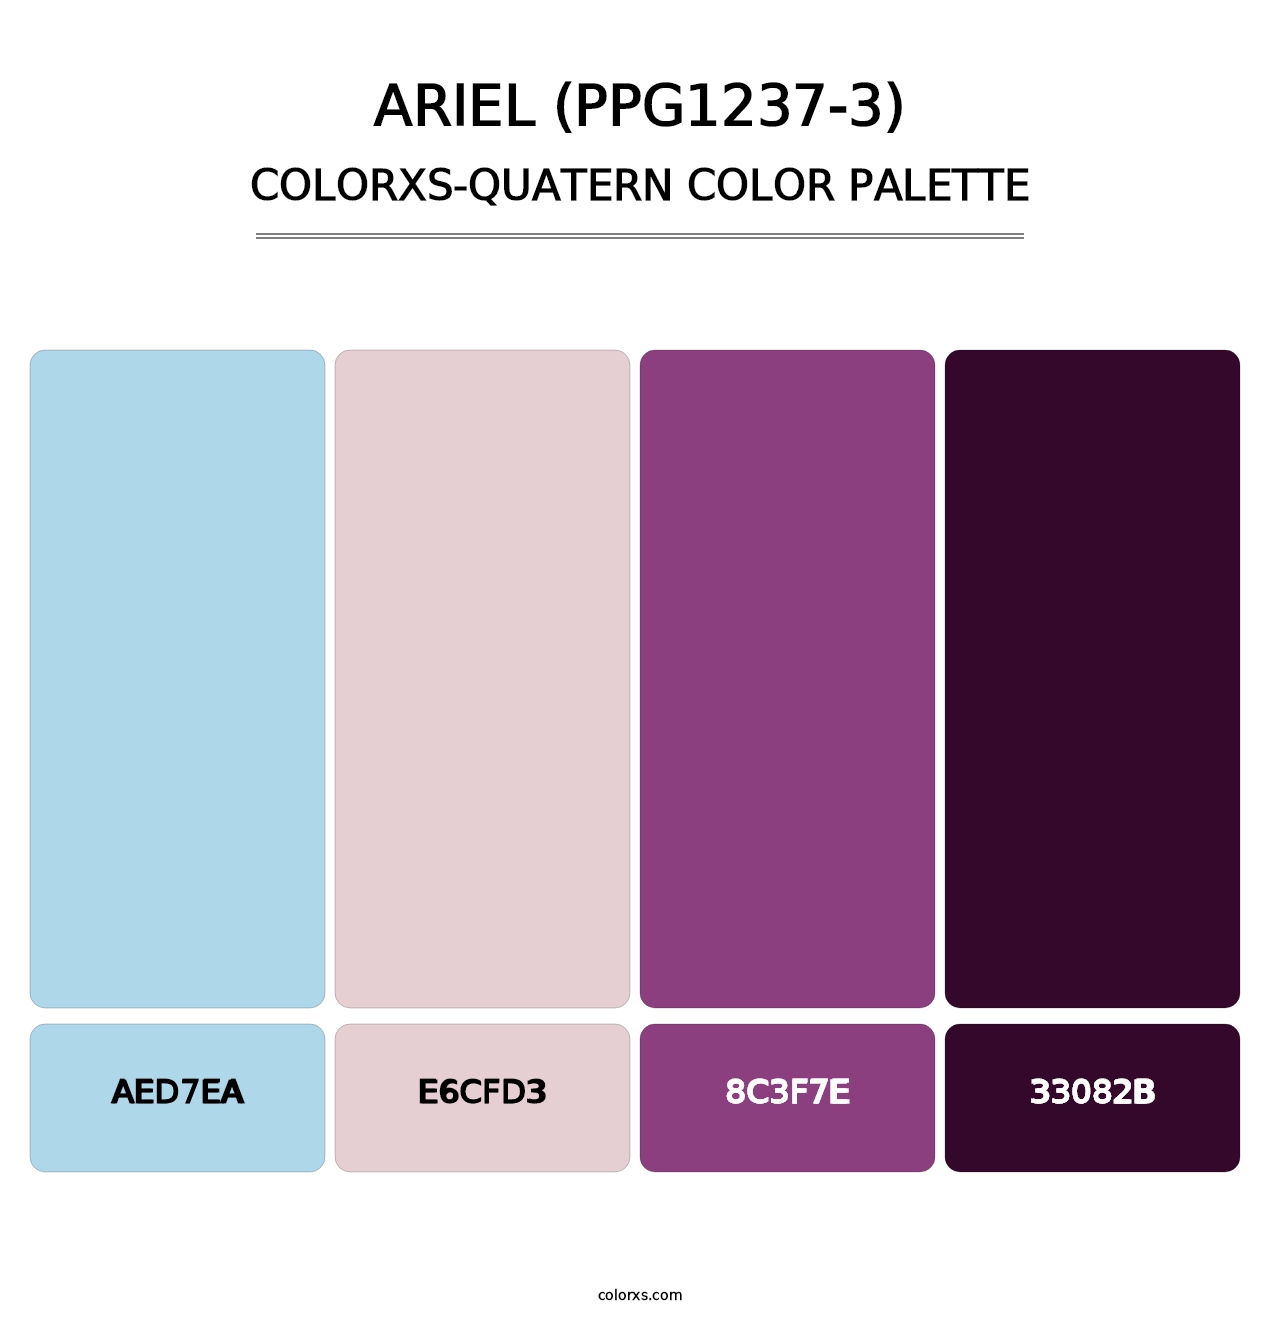 Ariel (PPG1237-3) - Colorxs Quatern Palette